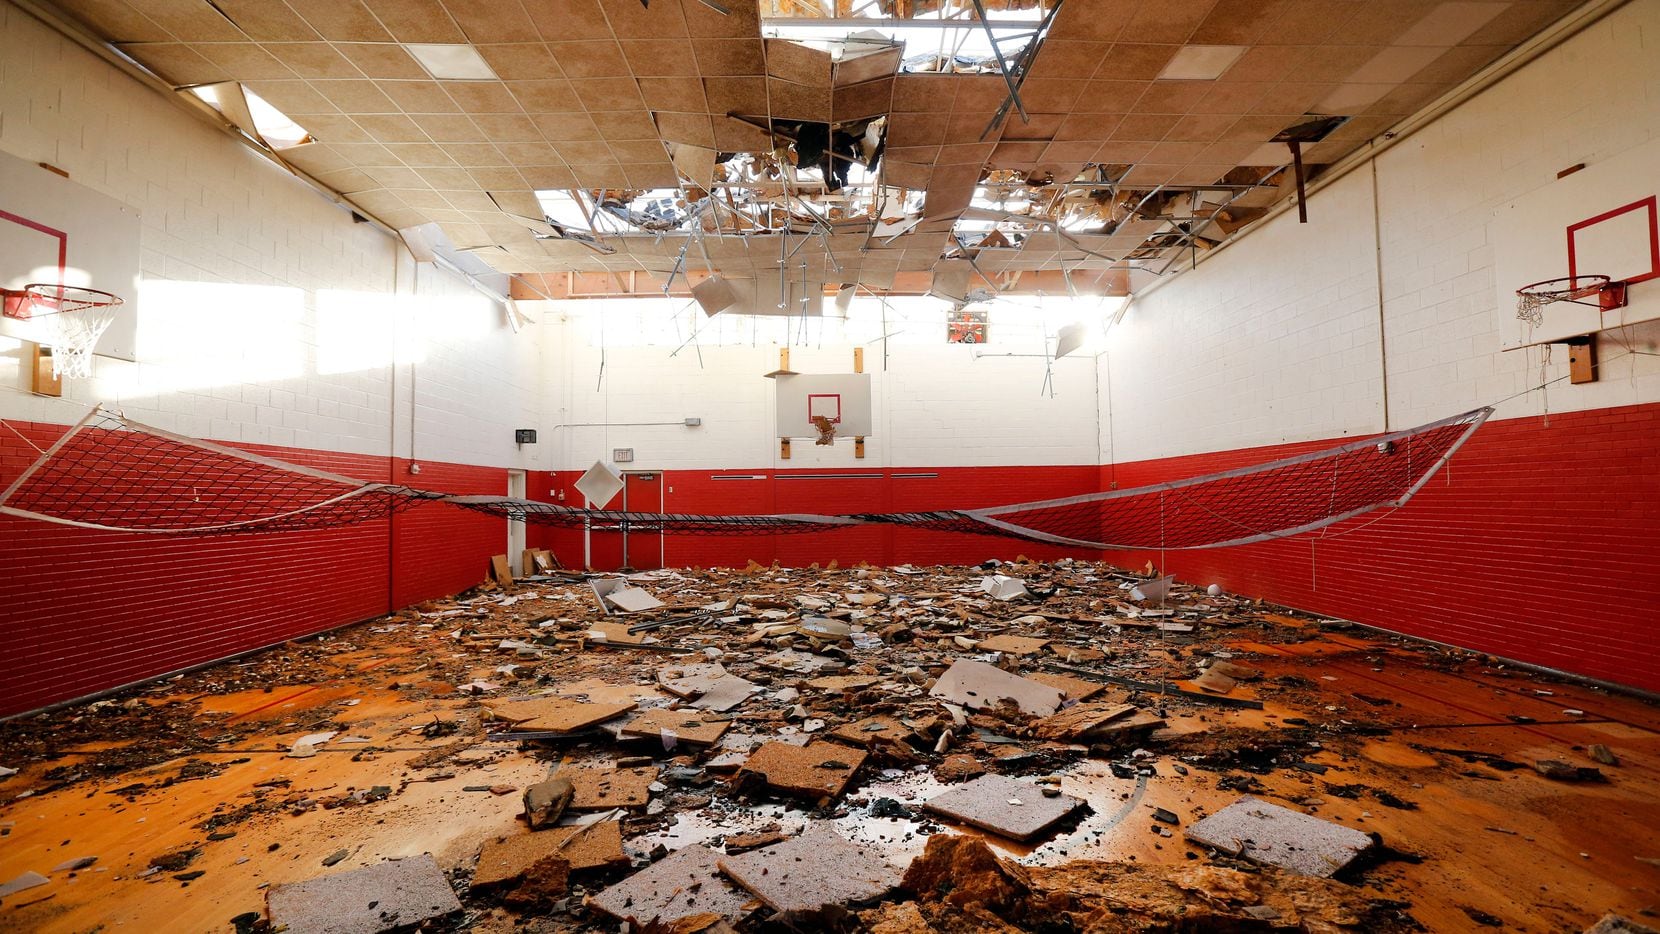 El gimnasio en la preparatoria Cary quedó así luego del tornado. Varias escuelas del área...